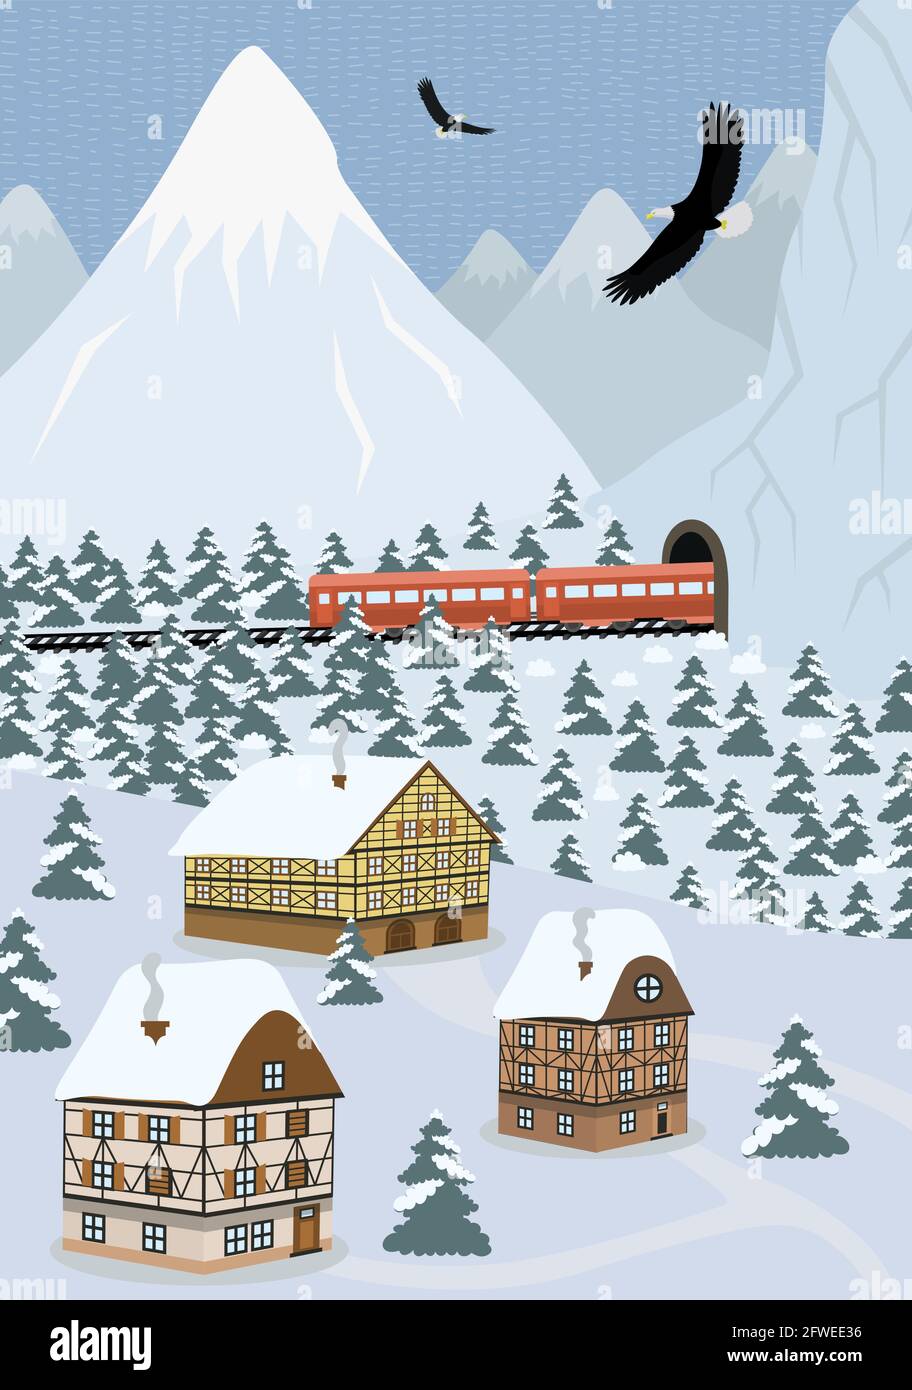 Winter handgezeichnete Poster Country-Szene in alpinen Bergen. Der Expresszug fährt auf dem Zug und verlässt den Tunnel. Vector Landschaft verschneiten Hängen mit Tannenwald und europäischen Häusern der Hochlandsiedlung Stock Vektor